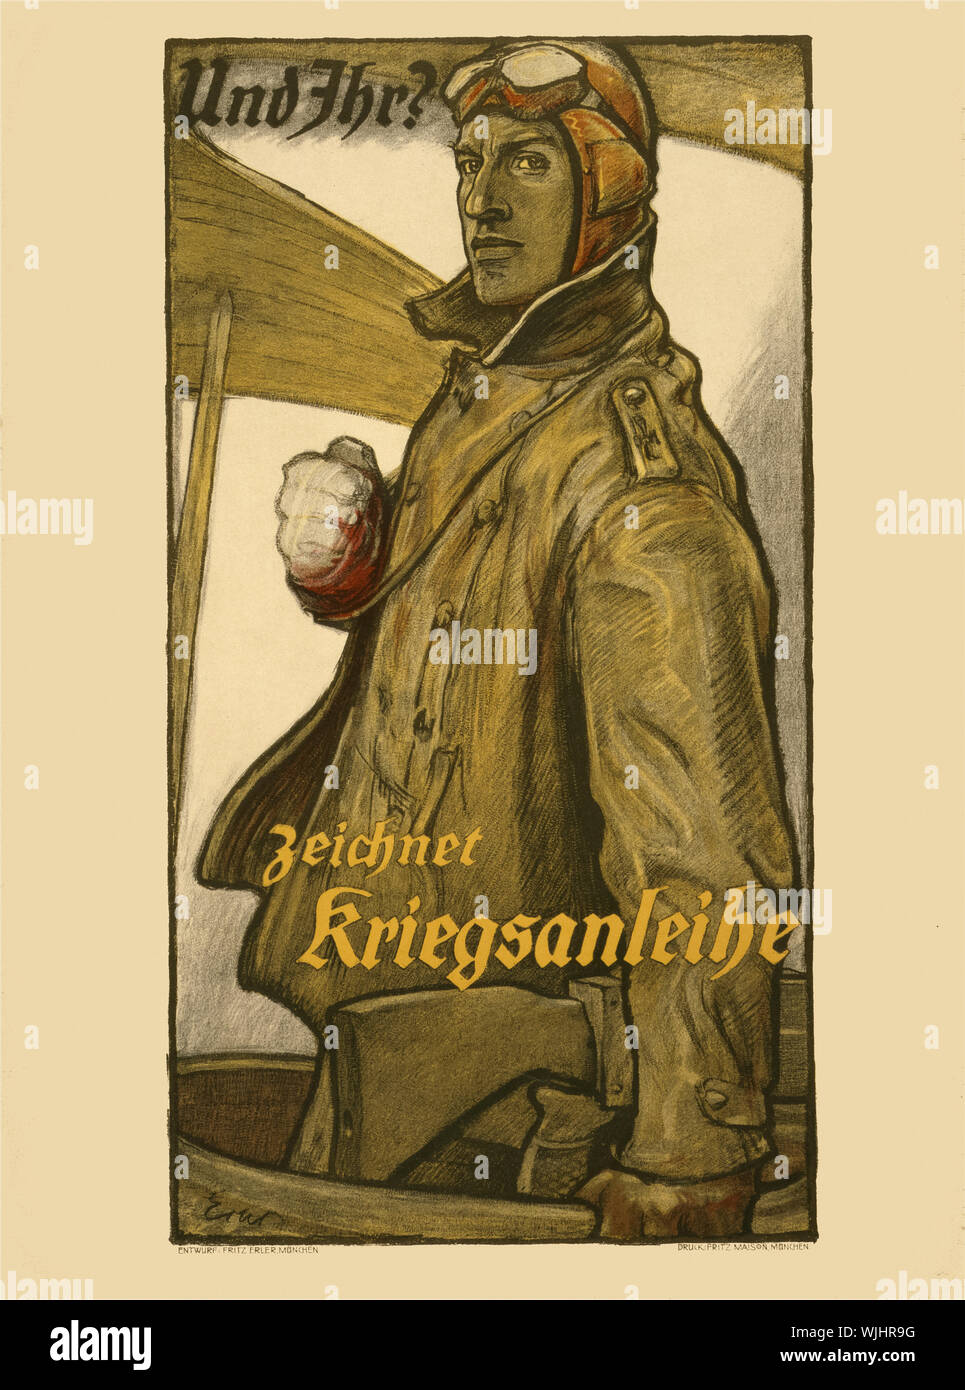 Ein deutscher Ersten Weltkrieg zwei Poster mit einem Pilotprojekt von der Deutschen Luftstreitkräfte (Luftwaffe) zum Krieg Anleihen kaufen Krieg des Landes zu unterstützen. Stockfoto